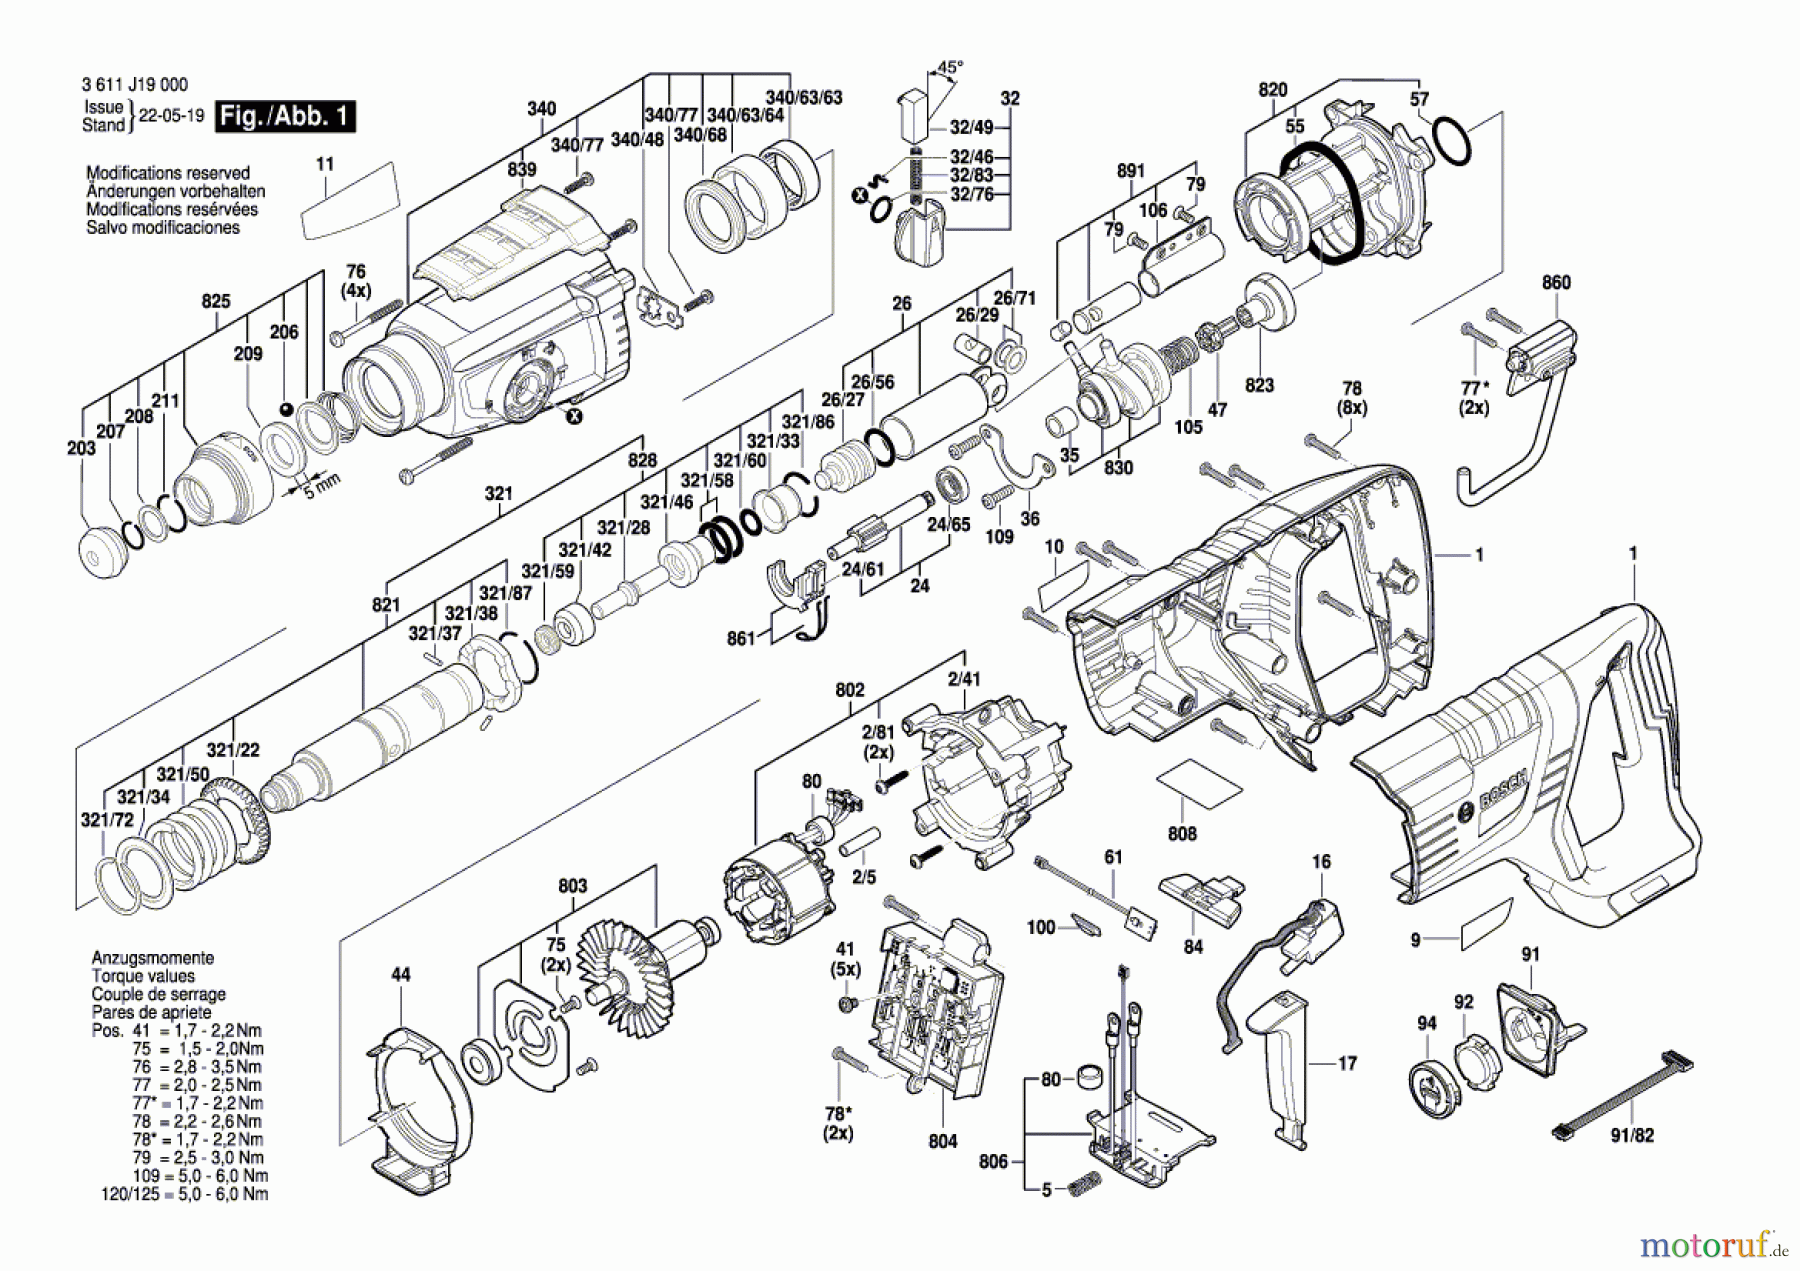  Bosch Werkzeug Bohrhammer GBH 18V-28 DC Seite 1